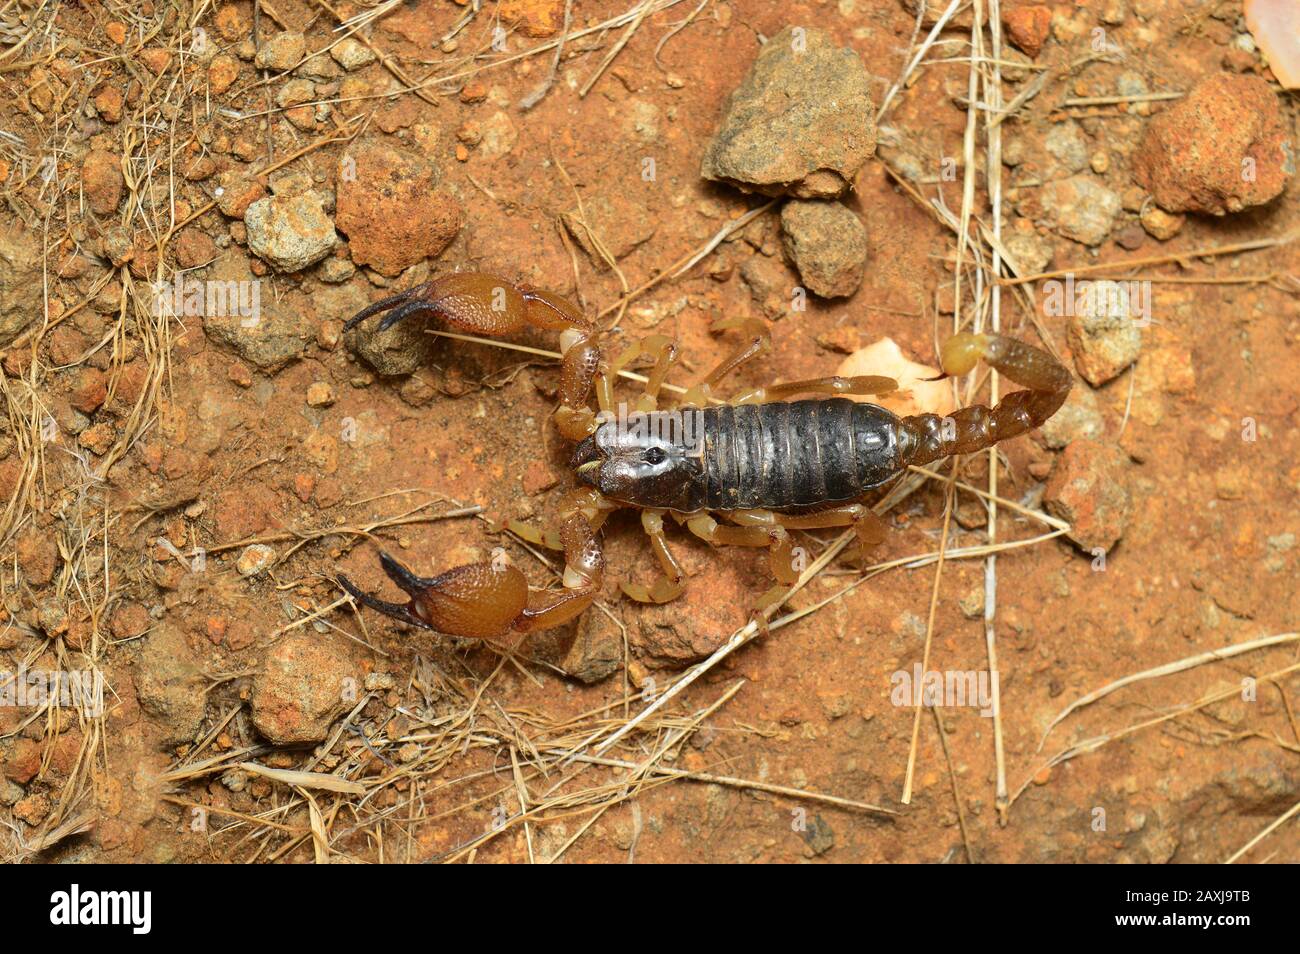 Heterometrus xanthopus ou Scorpion noir indien, district de Satara , Maharashtra, Inde. Un des arthropodes les plus venimeux et les plus anciens Banque D'Images